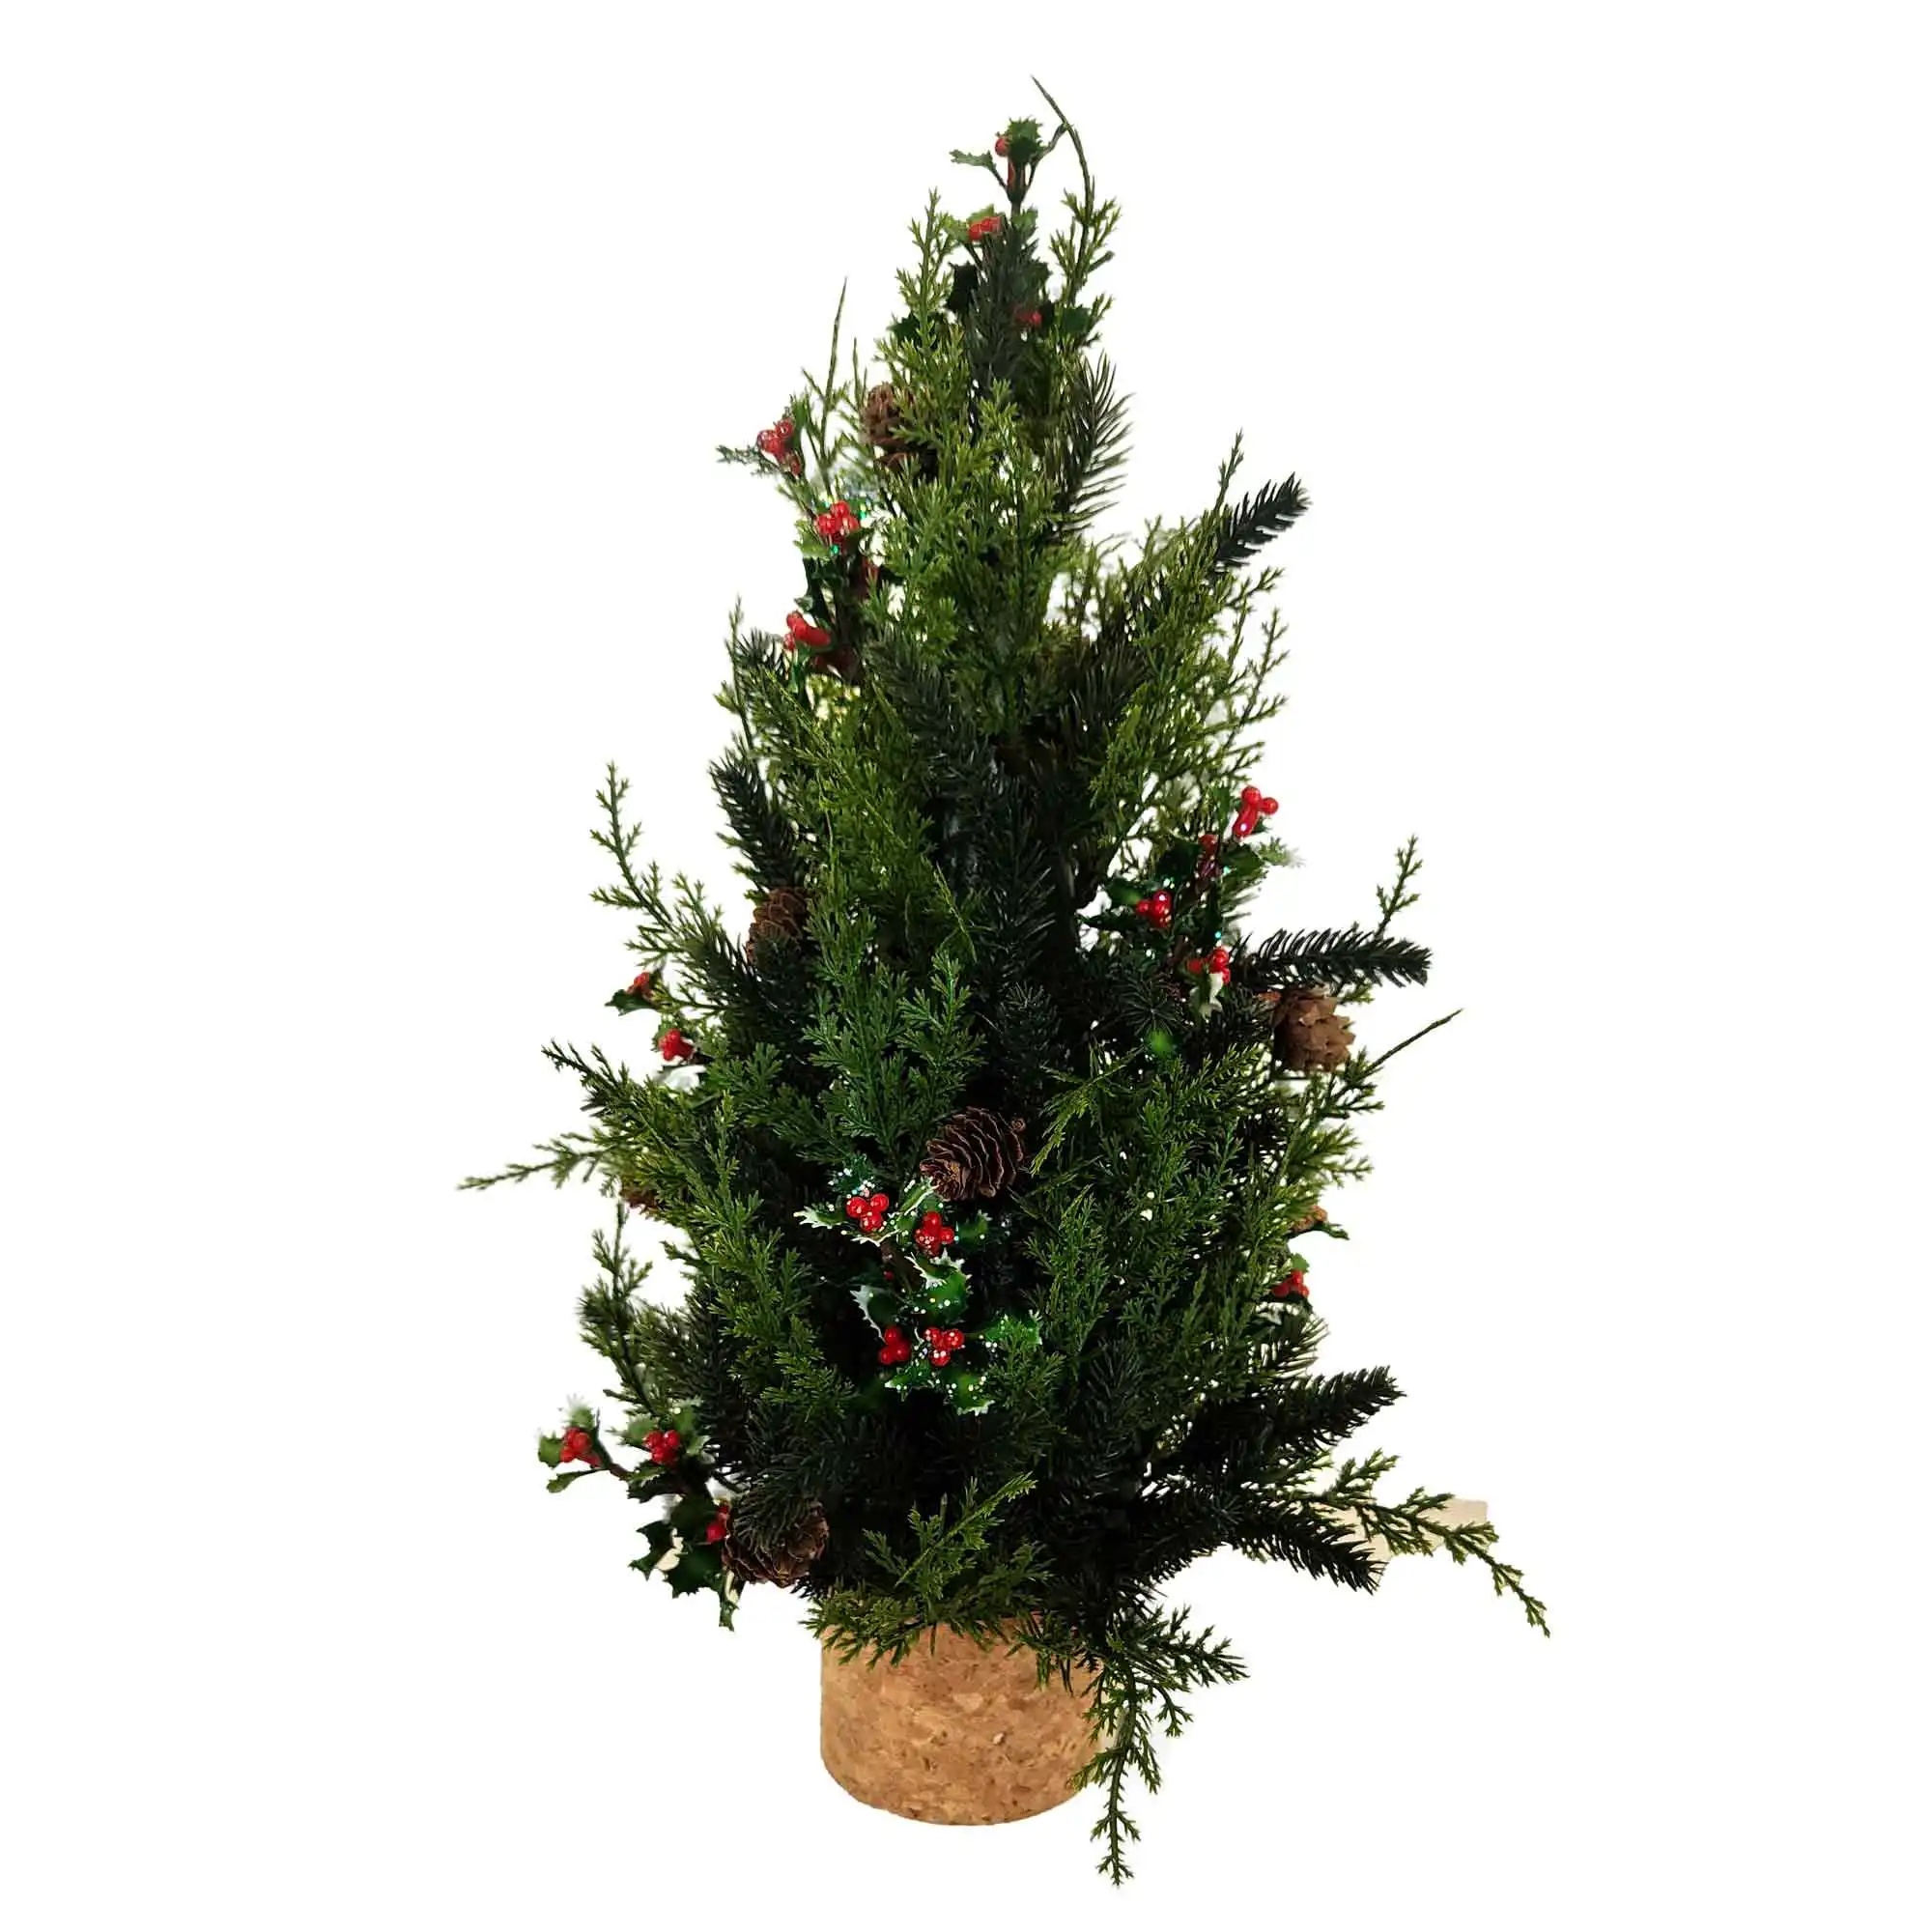 شجرة عيد الميلاد, شجرة عيد الميلاد مصغرة من البولي إيثيلين مع مخروط من الصنوبر والتوت والديكور المنزلي بسعر الجملة من المصنع